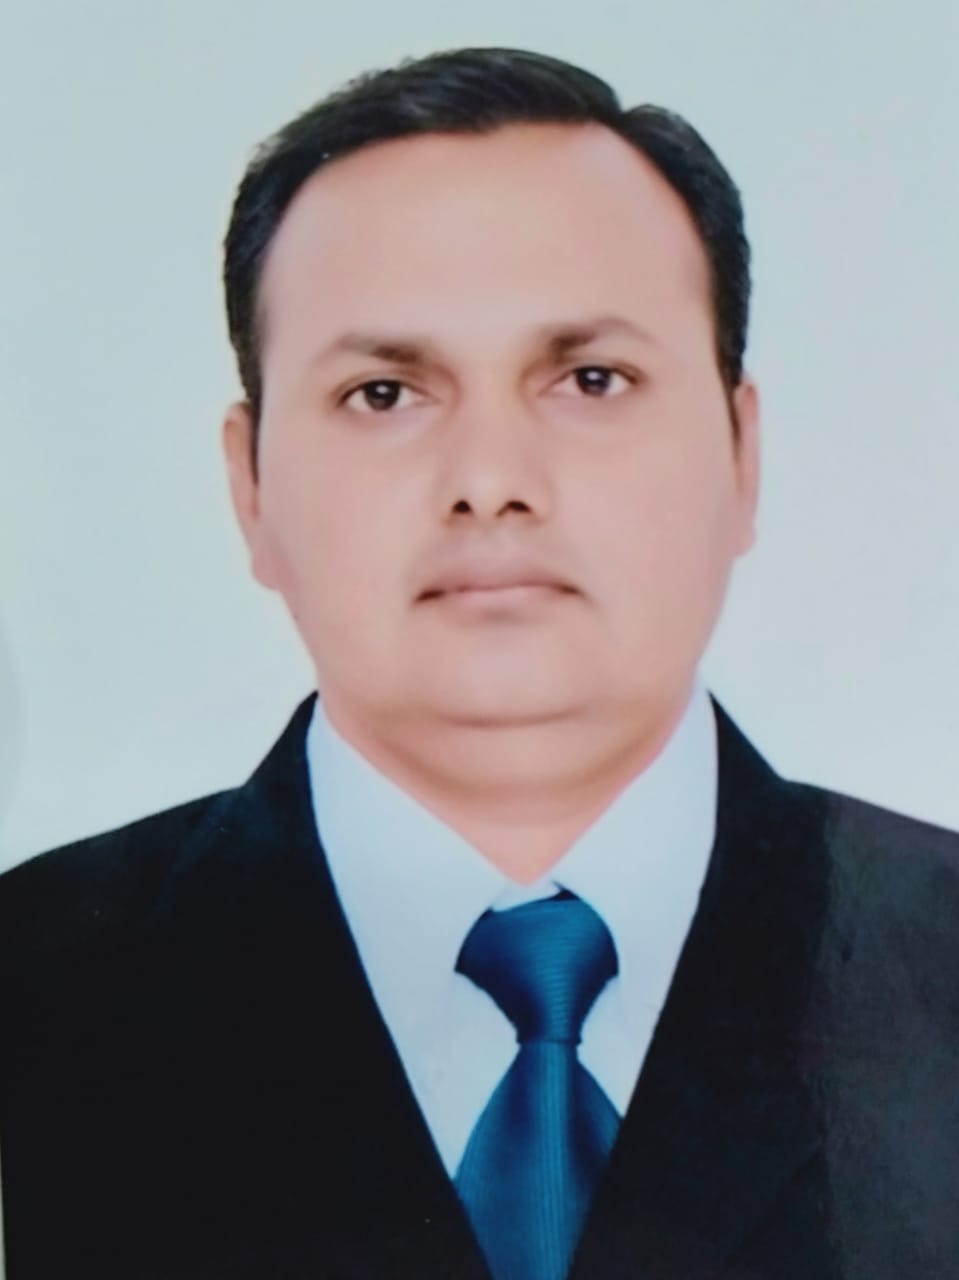 Dr. Harshad Thakkar